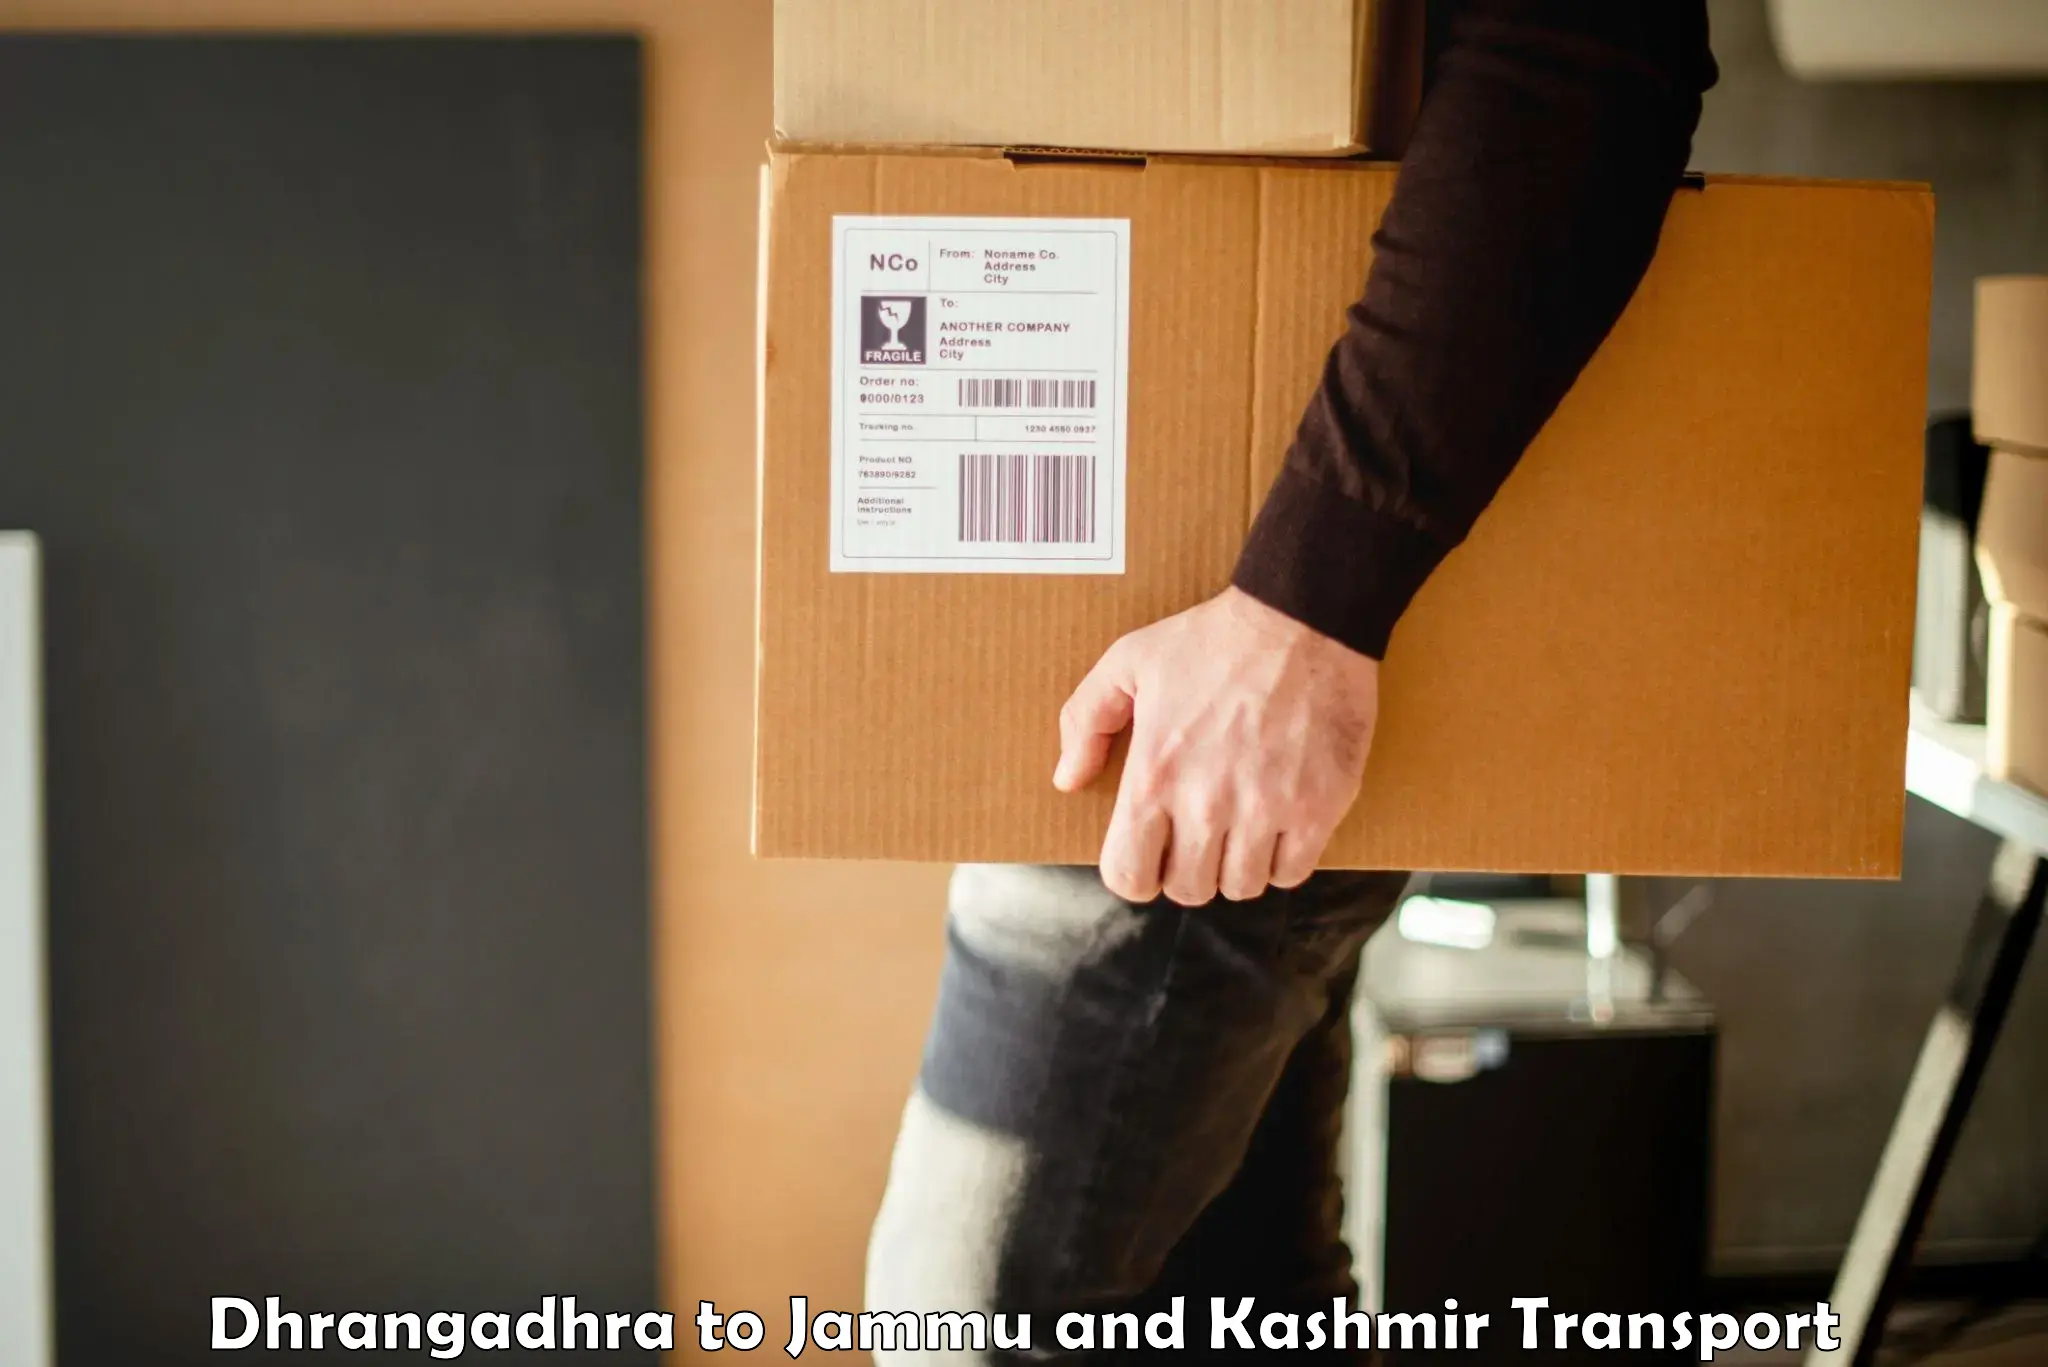 Furniture transport service Dhrangadhra to Jammu and Kashmir